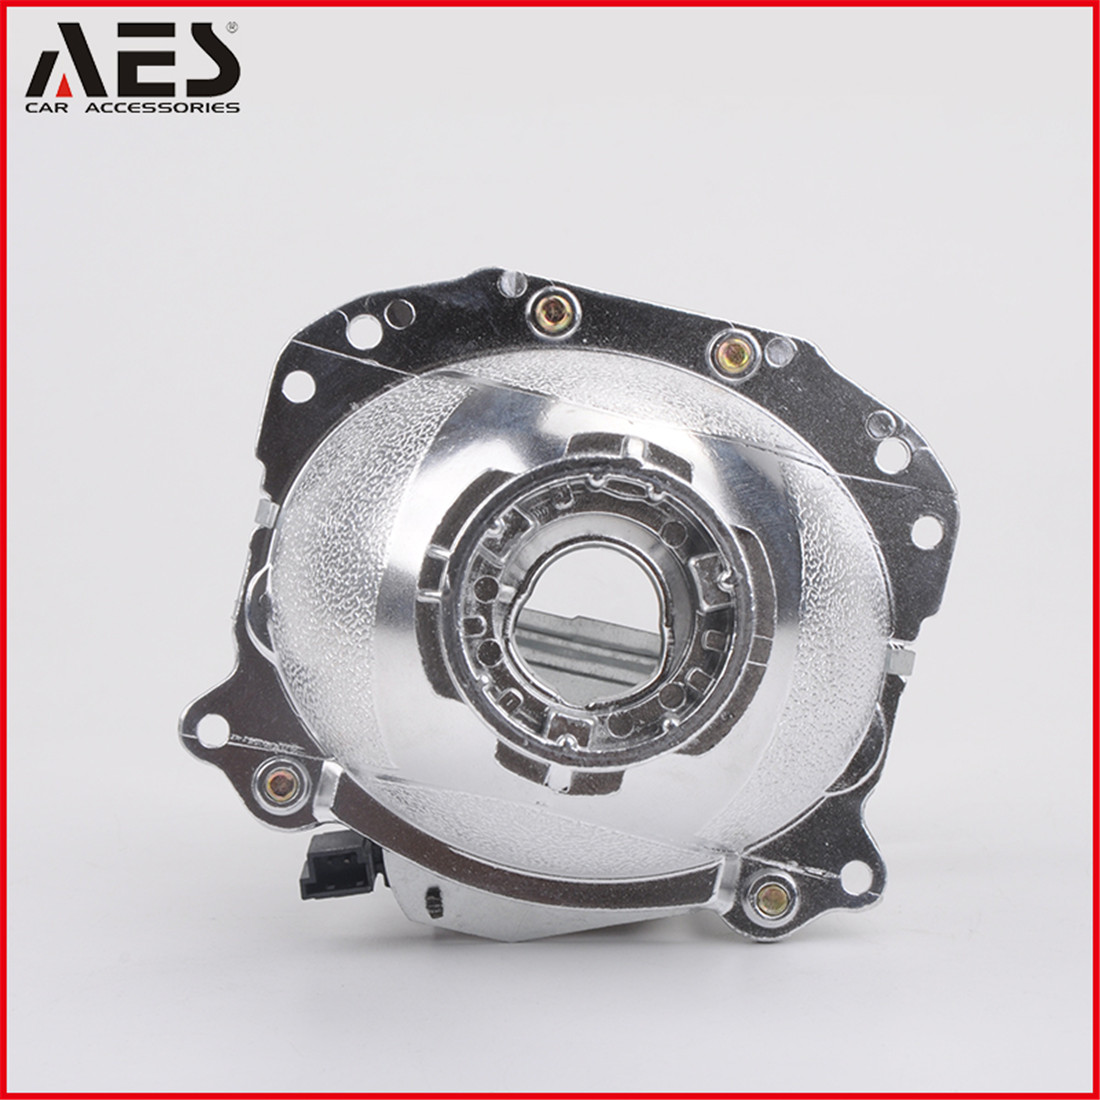 AES-Auto-headlight-hid-bi-xenon-3 (3).jpg